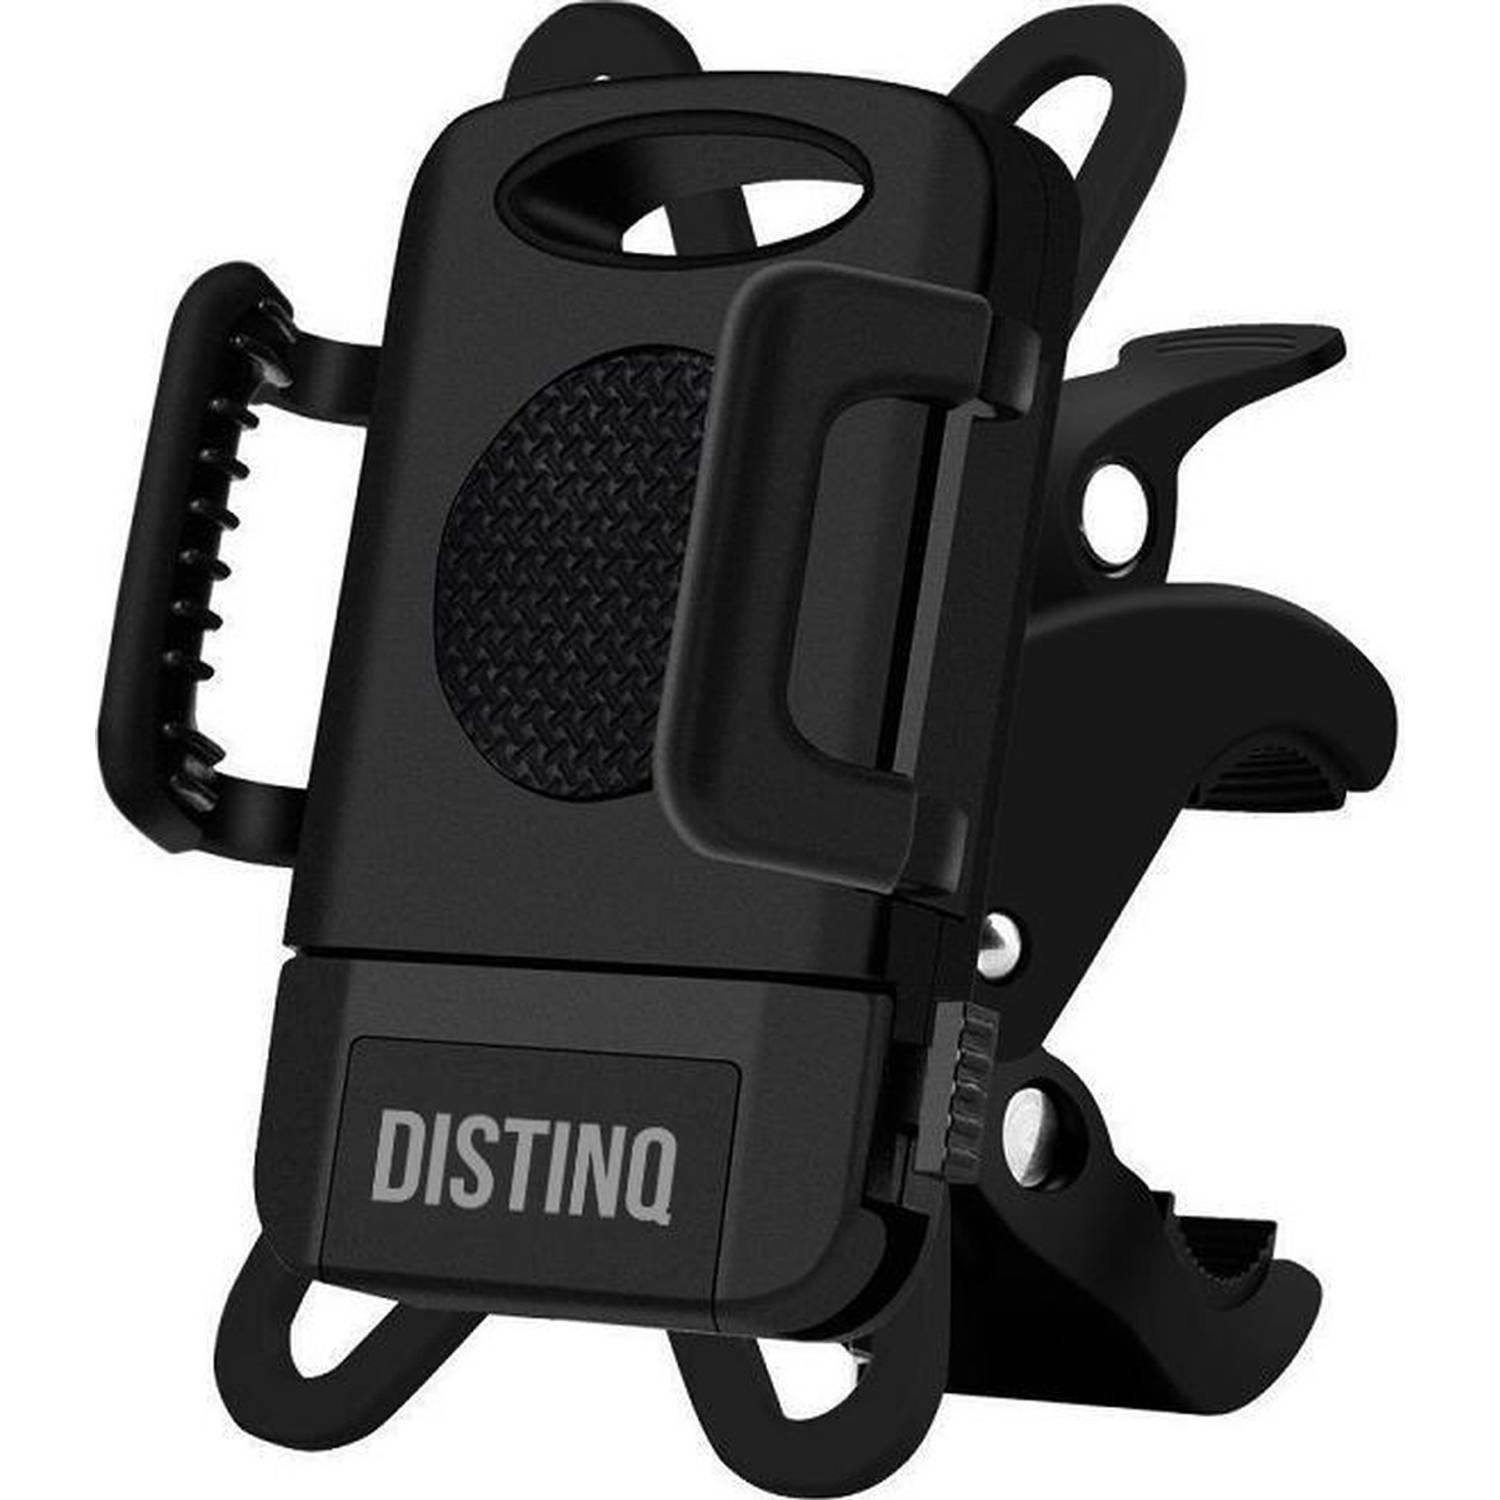 Langwerpig Bepalen focus DistinQ Telefoonhouder fiets en motor - 360 graden draaibaar - met clip -  zwart | Blokker